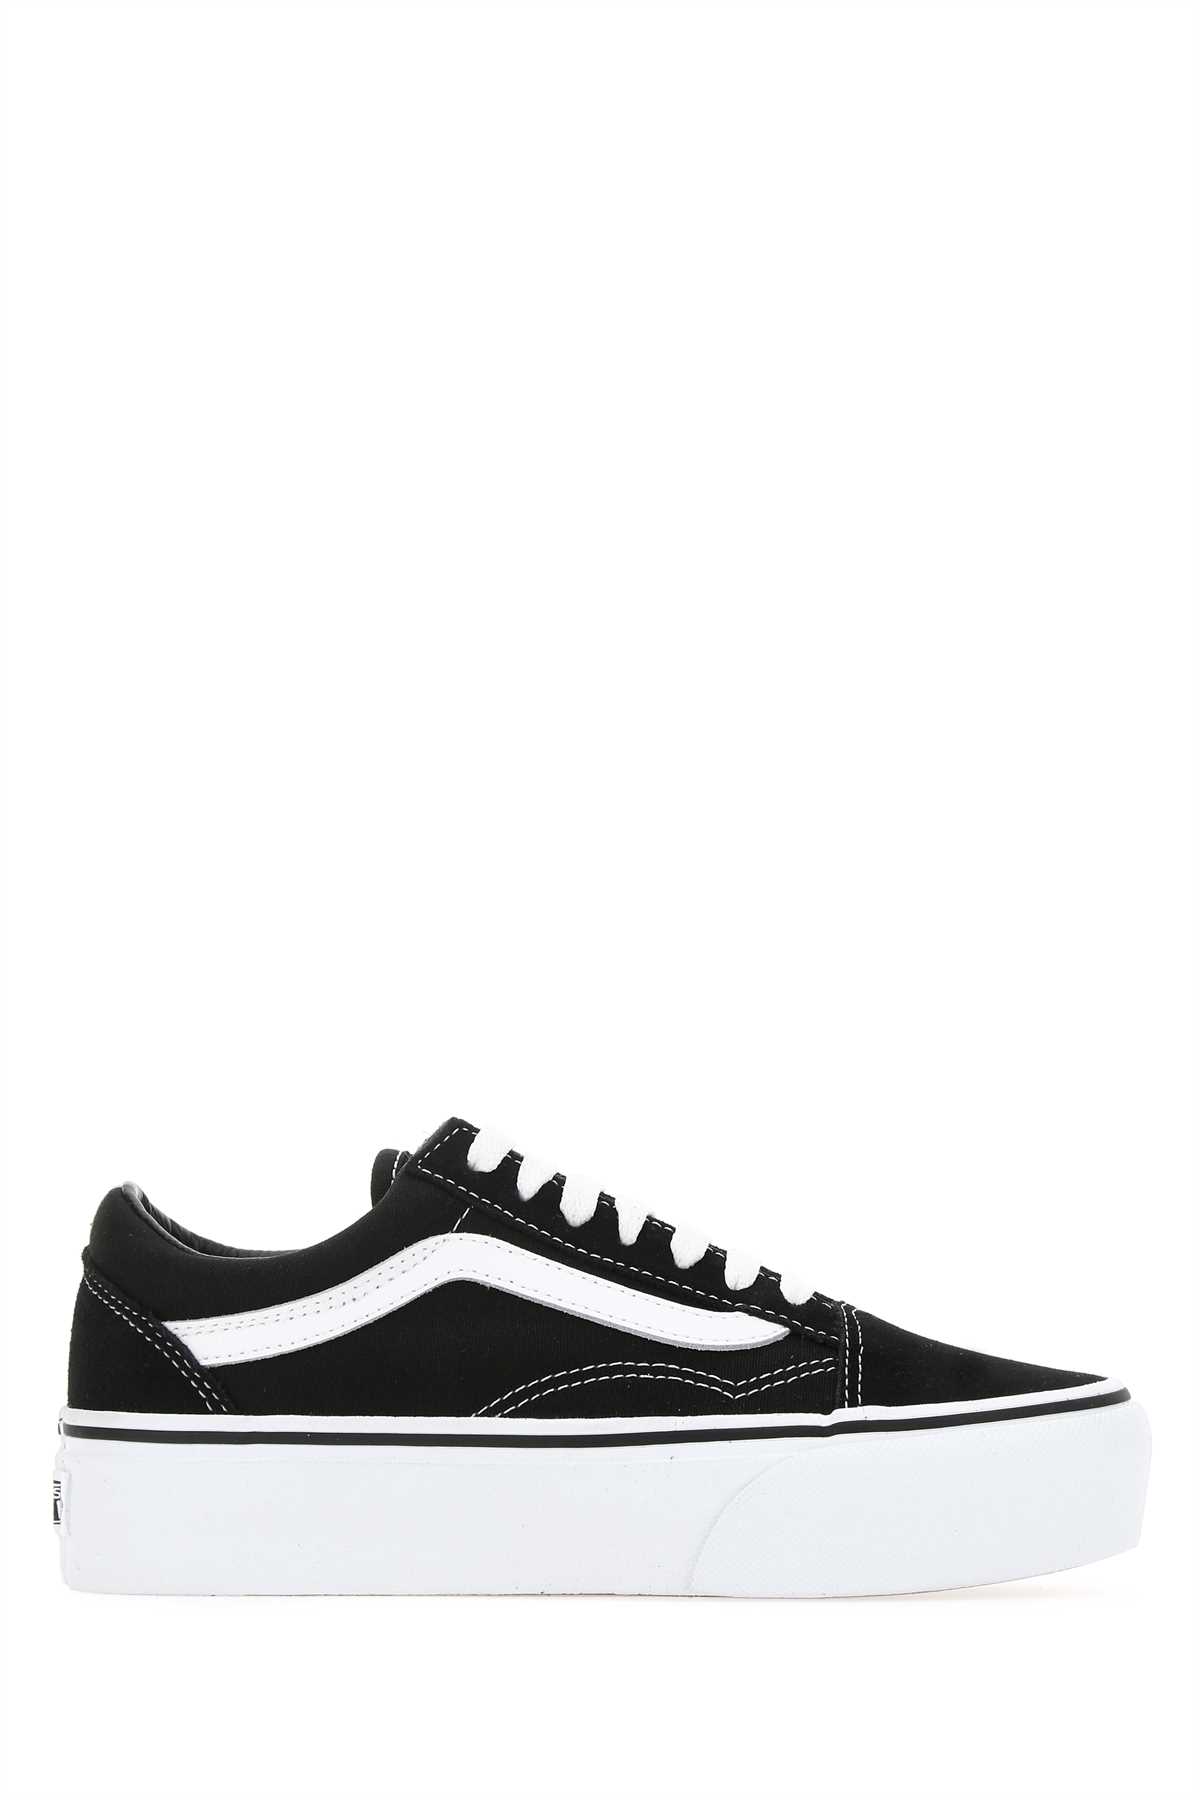 Shop Vans Black Fabric Old Skool Platform Sneakers In Y281